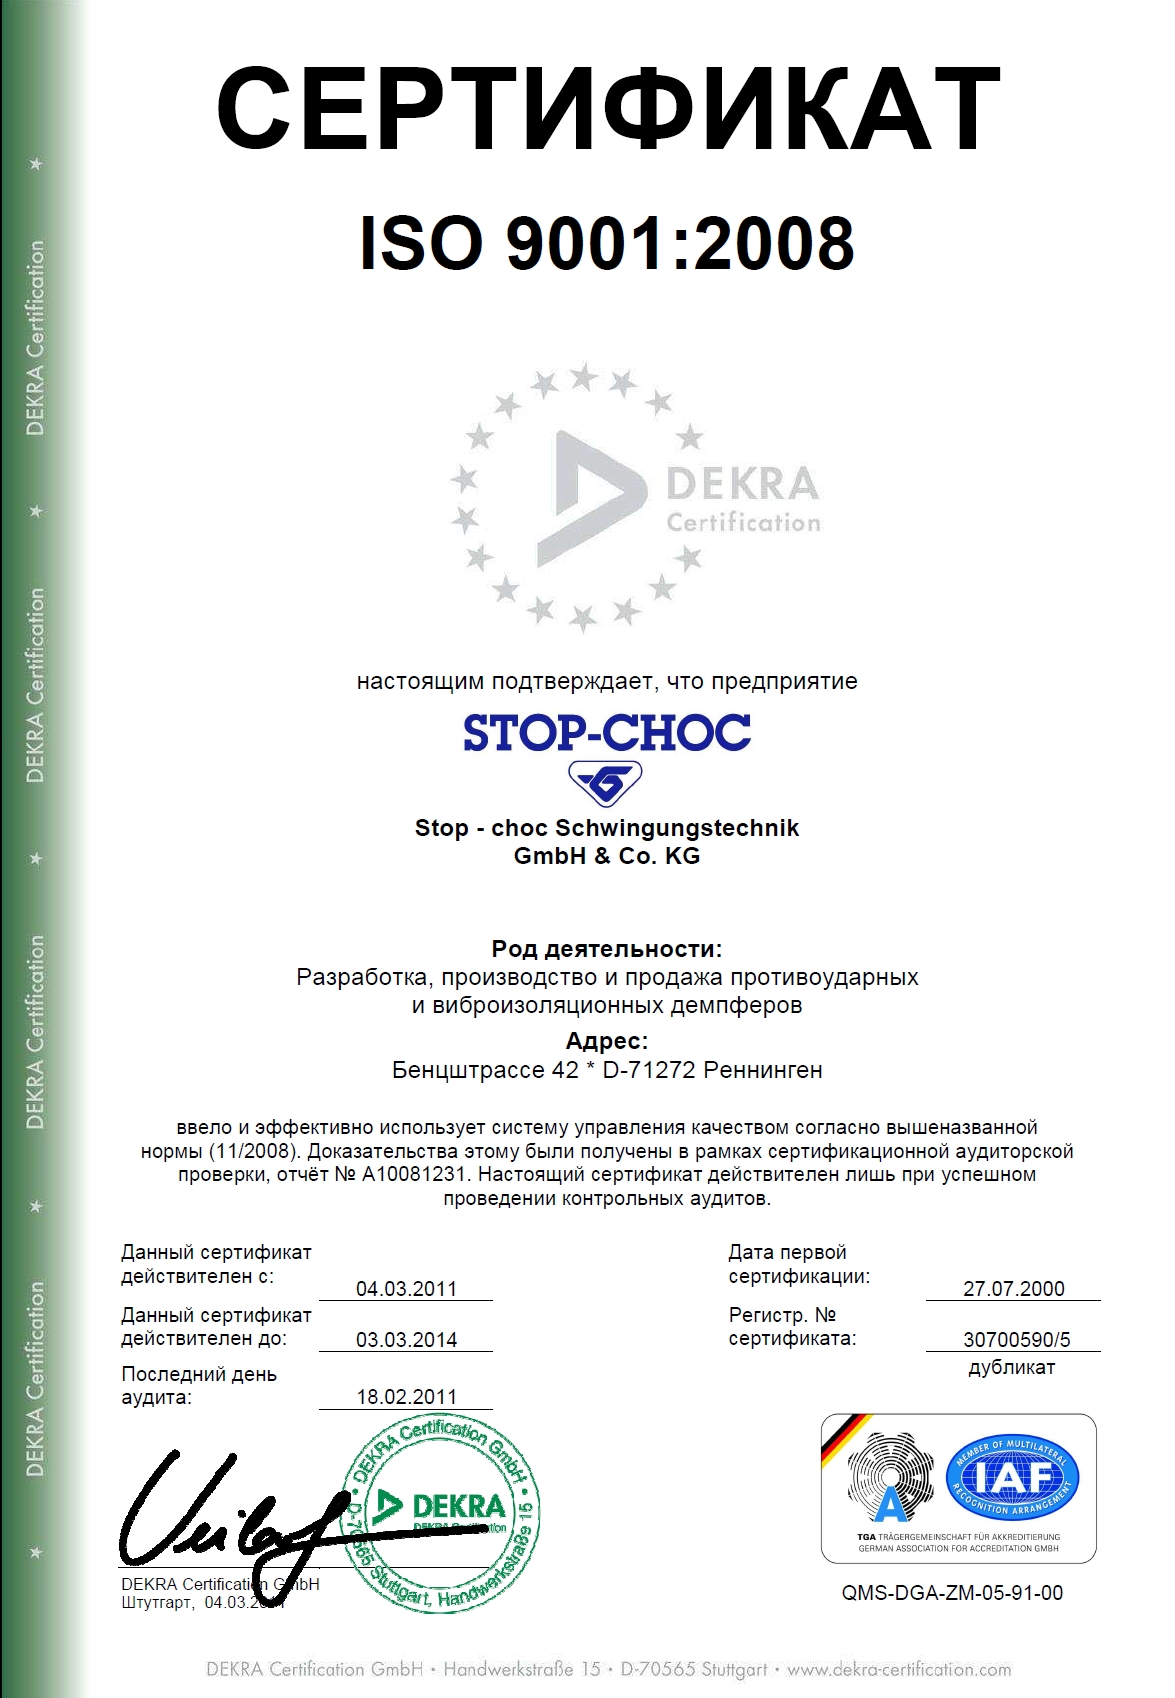 Сертификат на право реализации продукции Hutchinson Stop-Choc GmbH